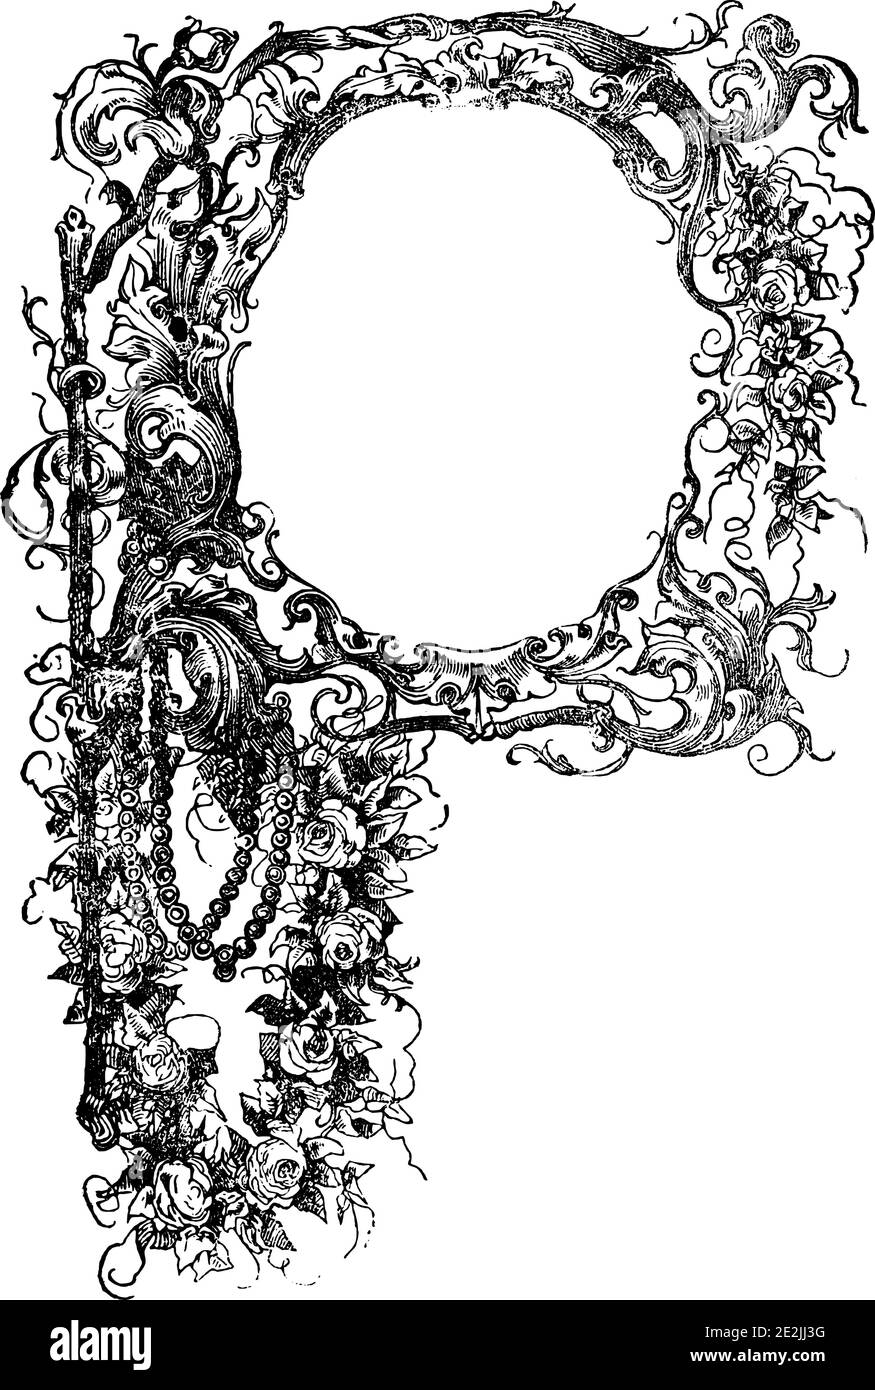 Dekorative florale ornamentalen Rahmen oder Großbuchstaben P. Antike Vintage-Gravur oder Zeichnung. Stock Vektor